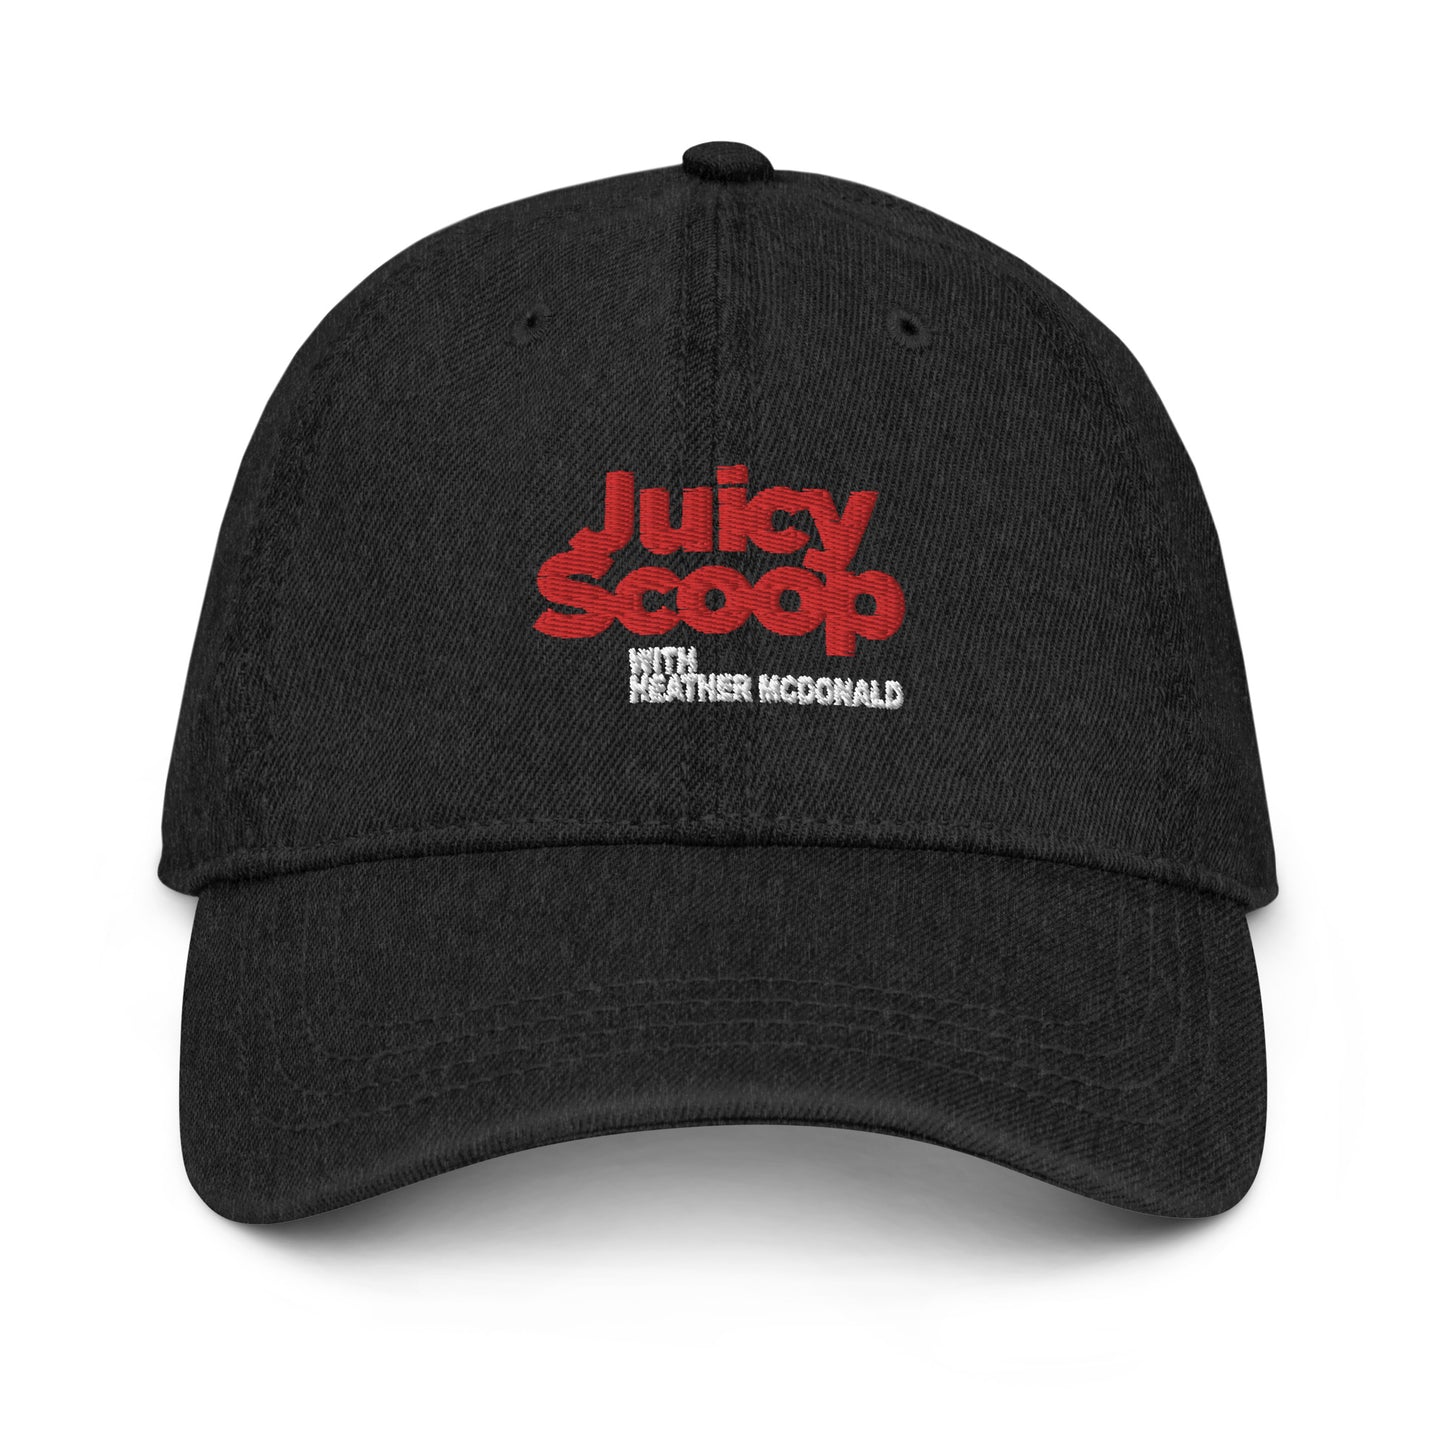 Juicy Scoop with Heather McDonald Denim Hat